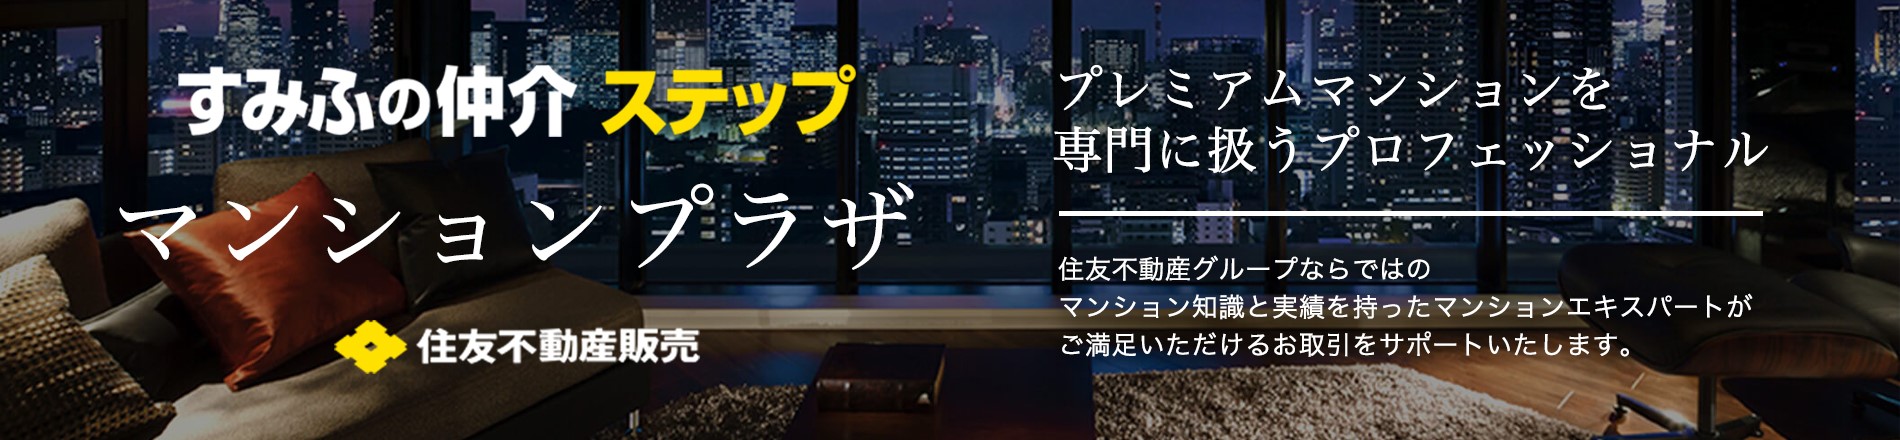 シティタワー大阪のマンションプラザ